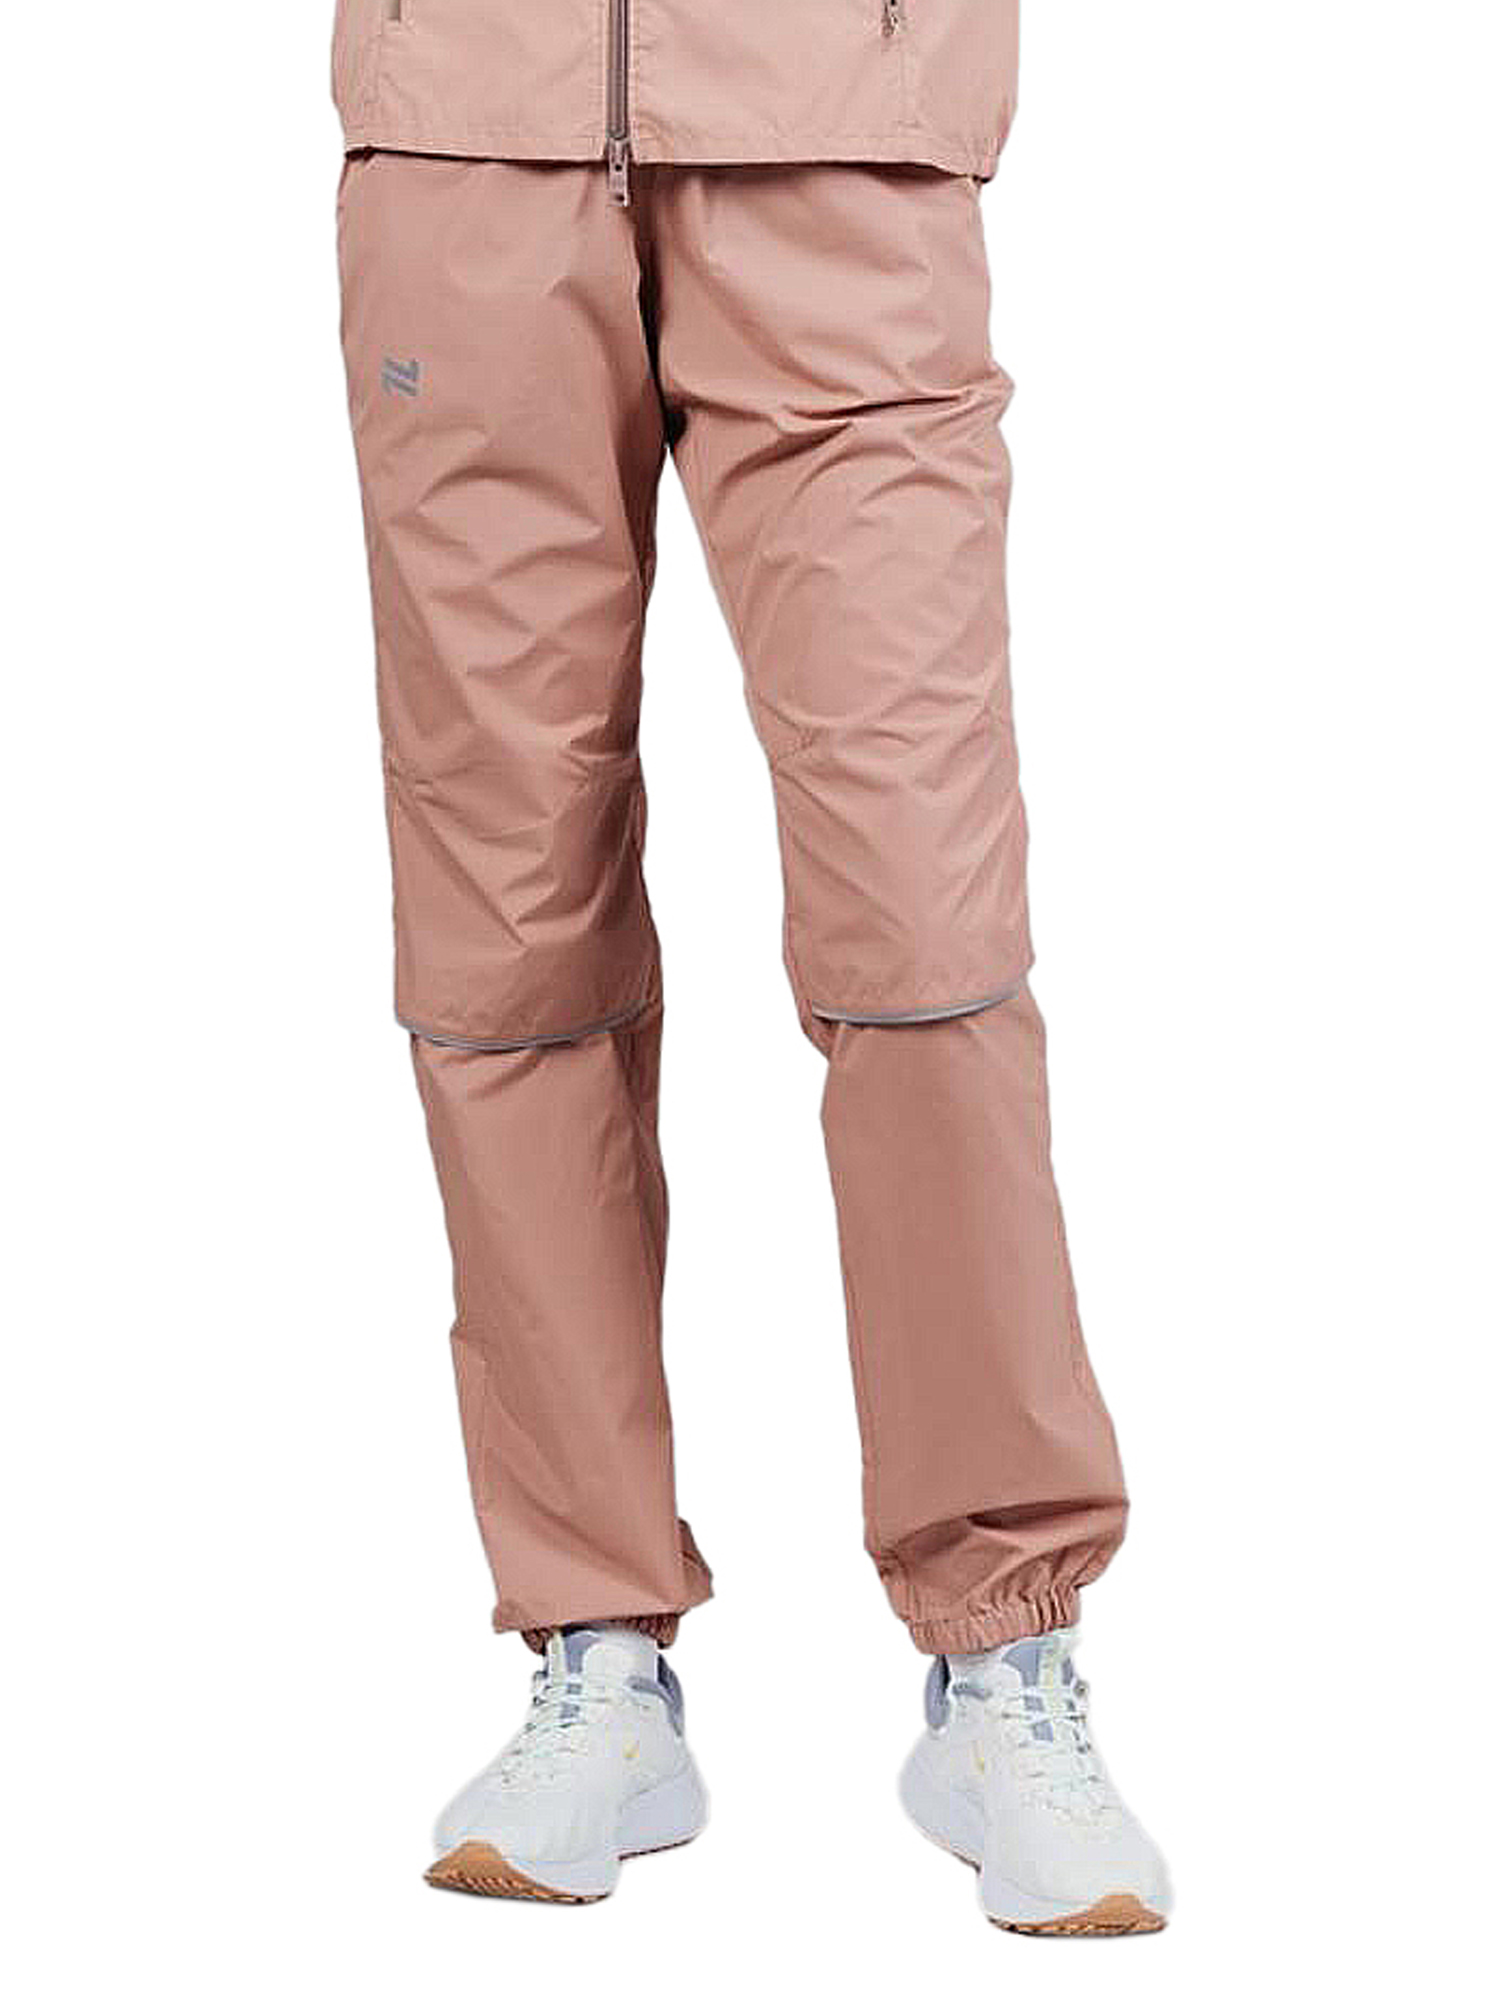 Спортивные брюки женские NordSki Rain бежевые 42